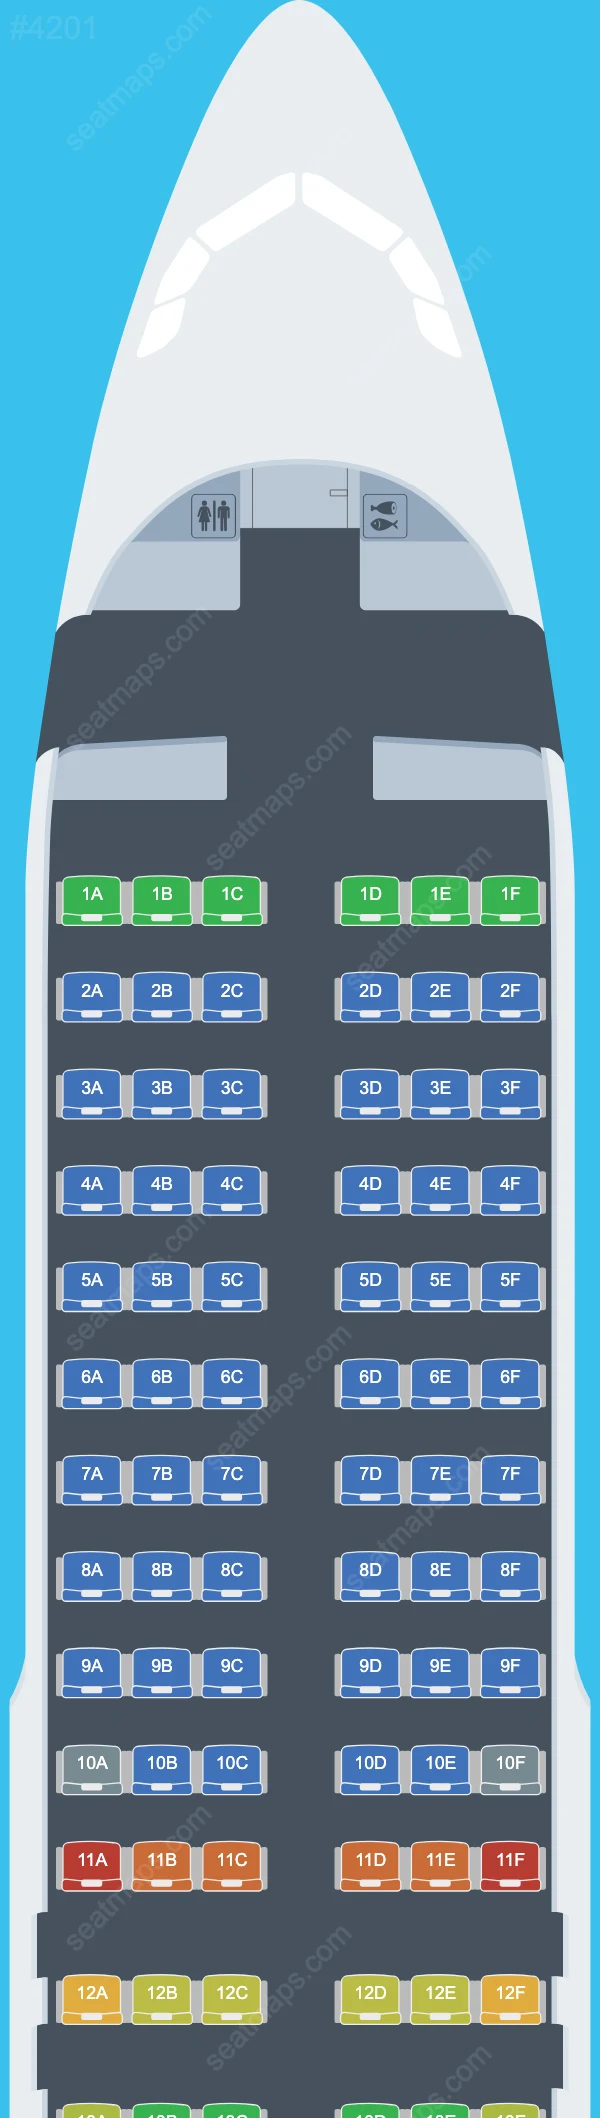 BH Air Airbus A320 Seat Maps A320-200 V.2